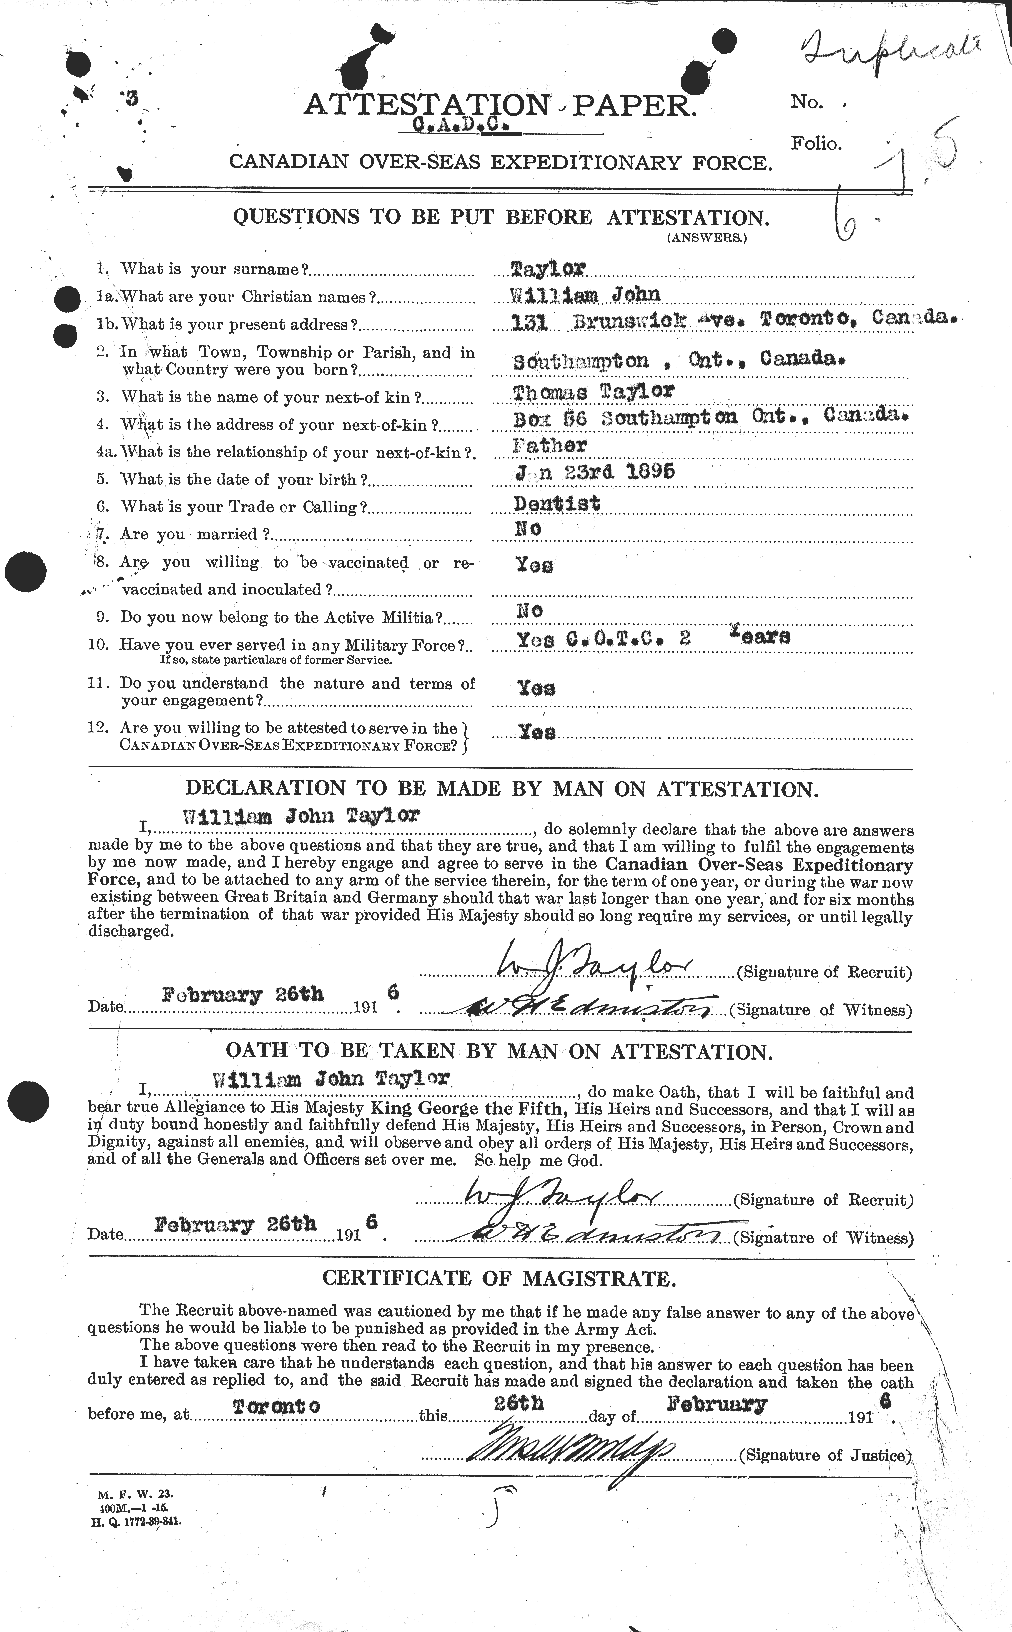 Dossiers du Personnel de la Première Guerre mondiale - CEC 628303a